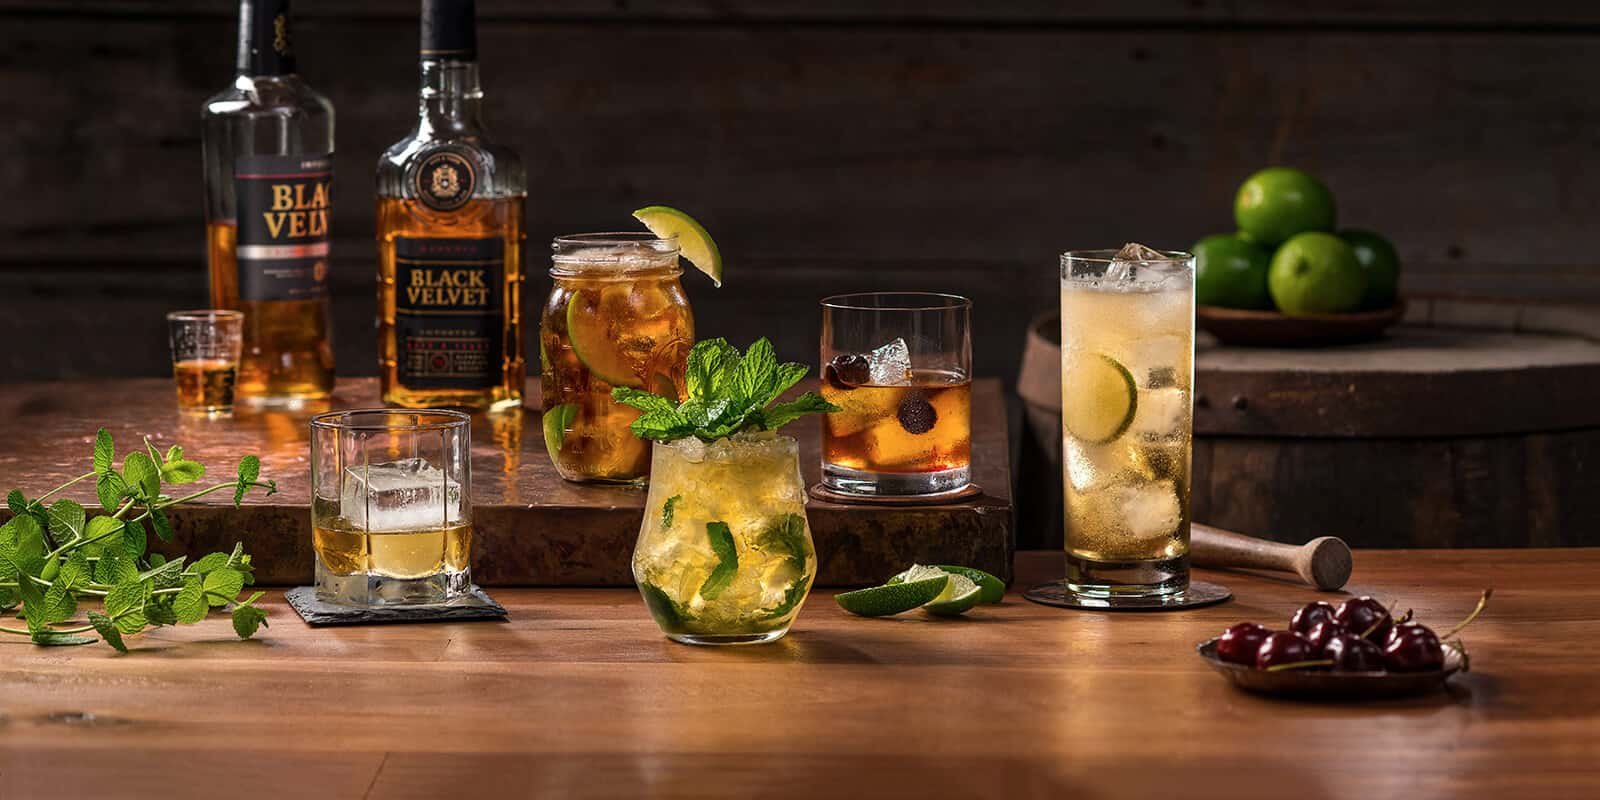 Cool Velvet Whisky cocktail recipe

